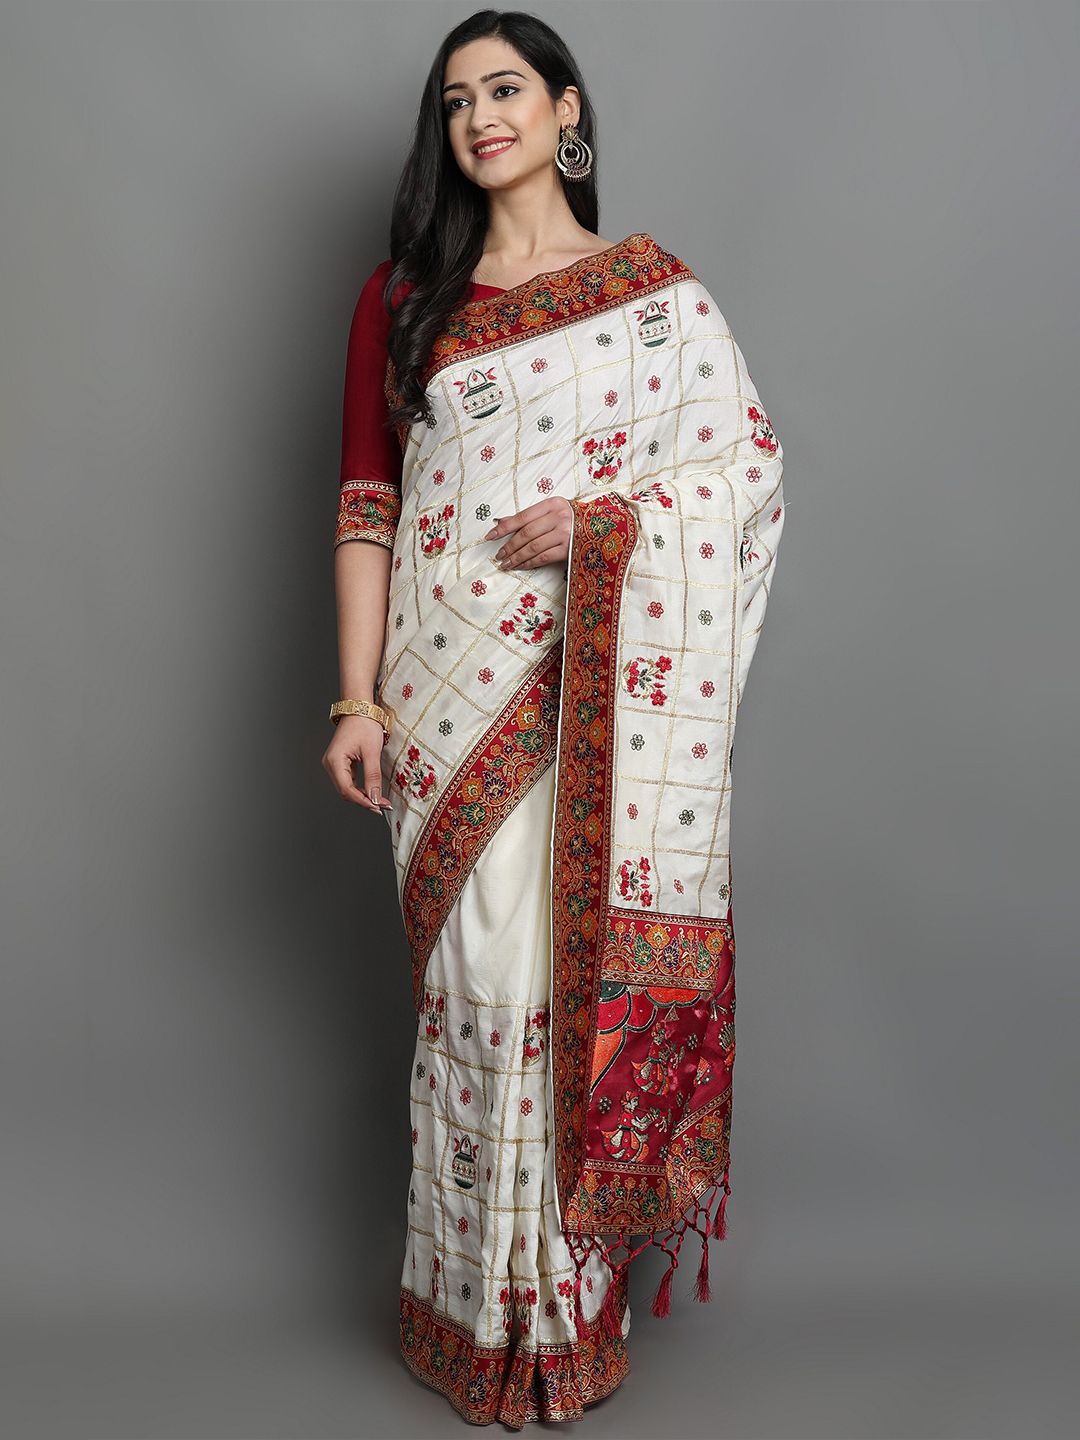 ASPORA Women White Ethnic Motifs Pure Silk Half and Half Kanjeevaram Saree with Tassels Price in India